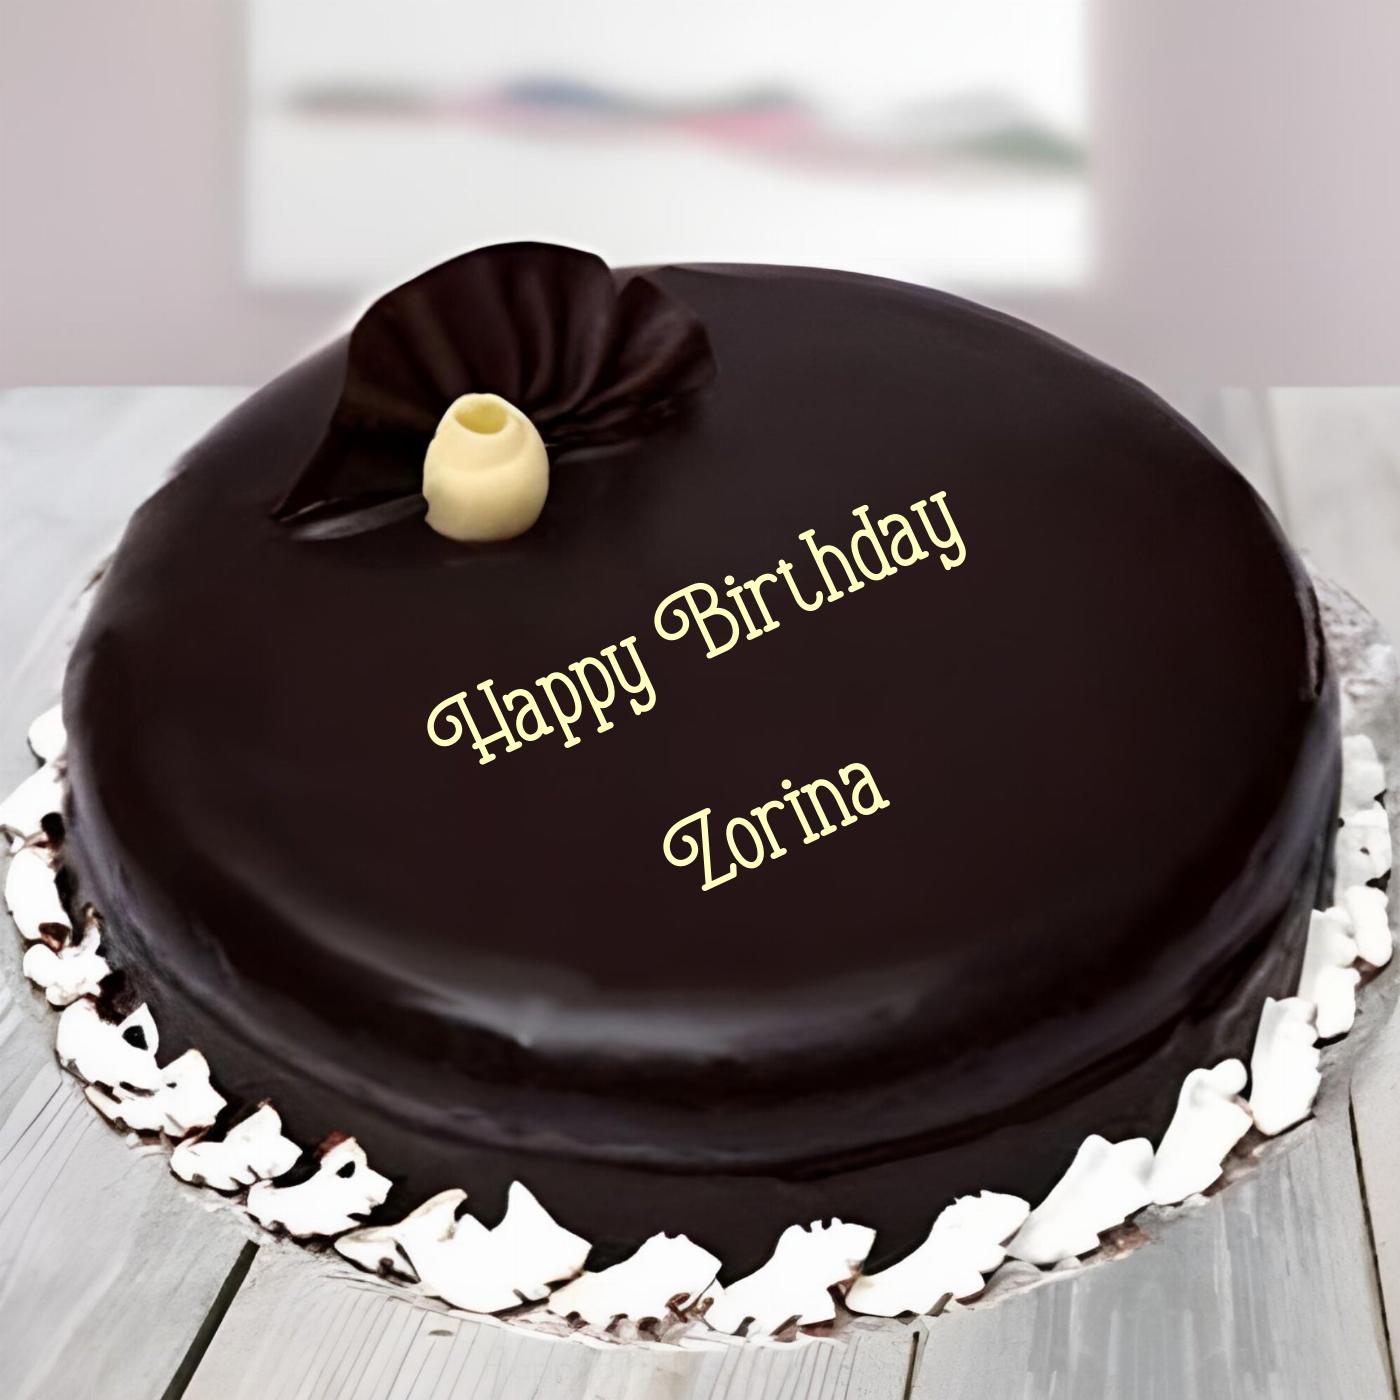 Happy Birthday Zorina Beautiful Chocolate Cake